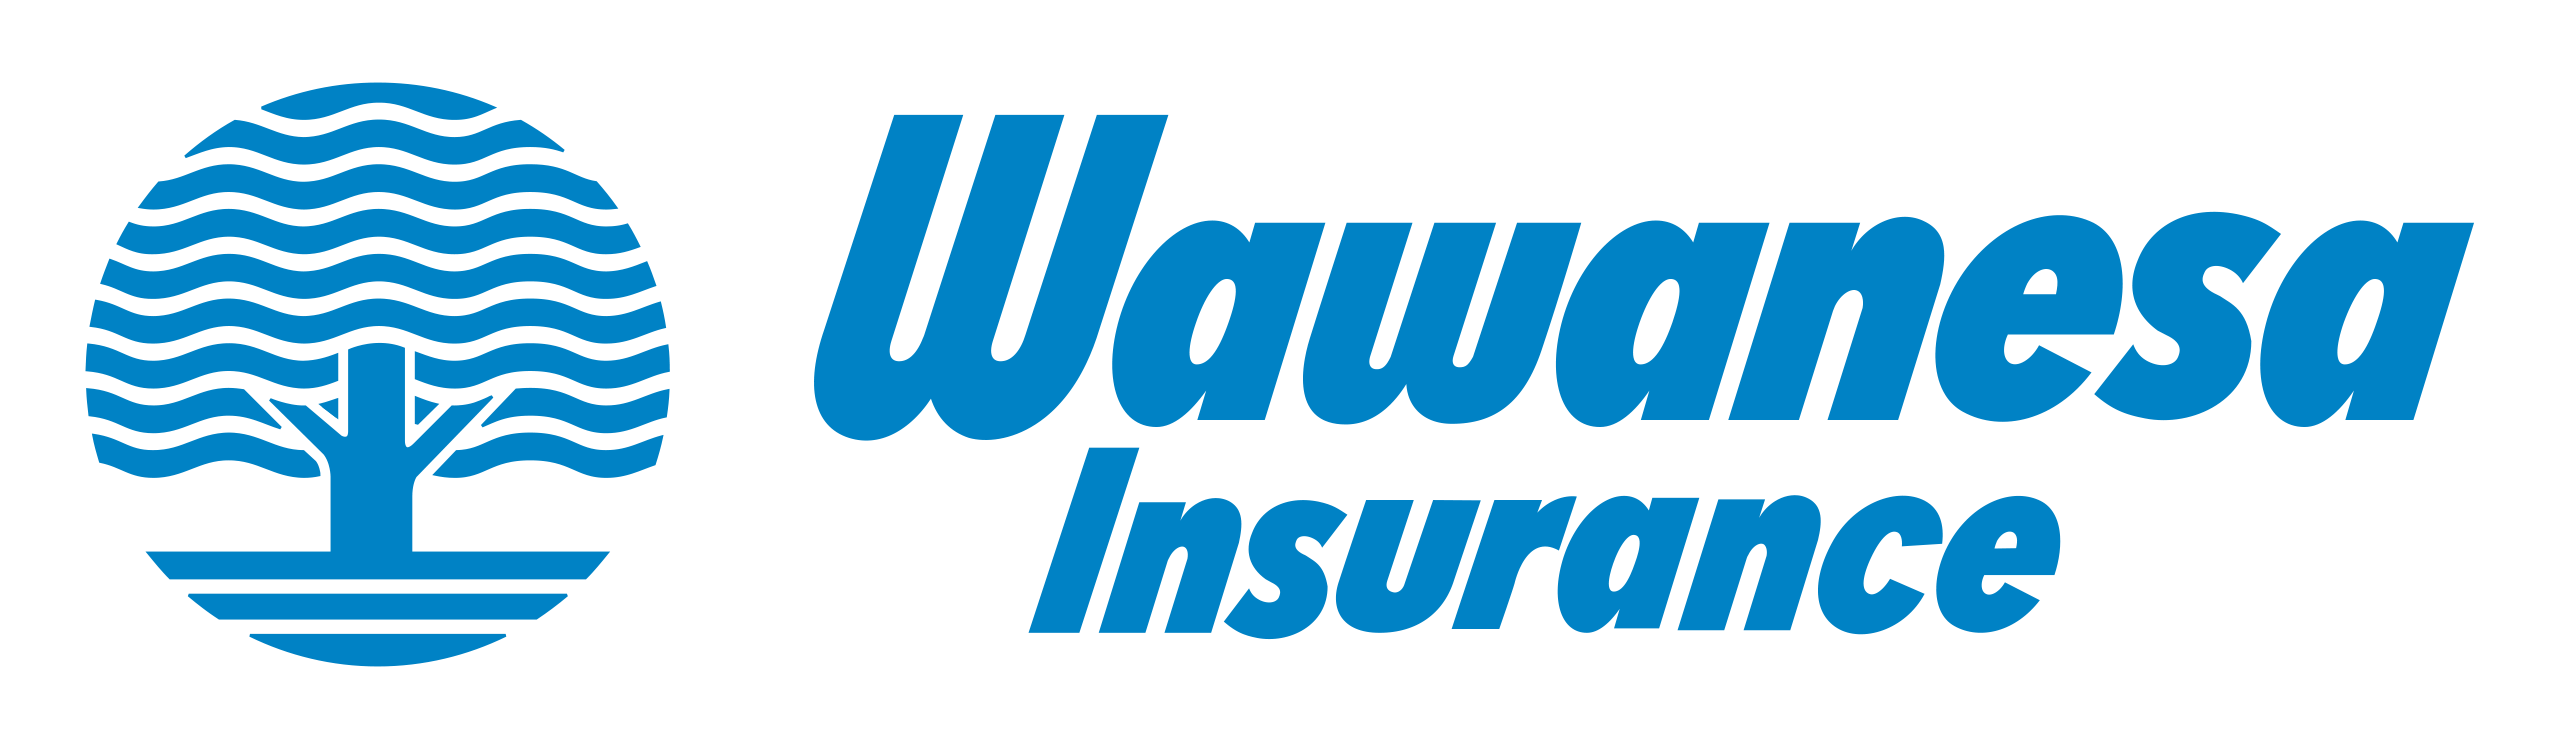 The Wawanesa Mutual Insurance Co logo